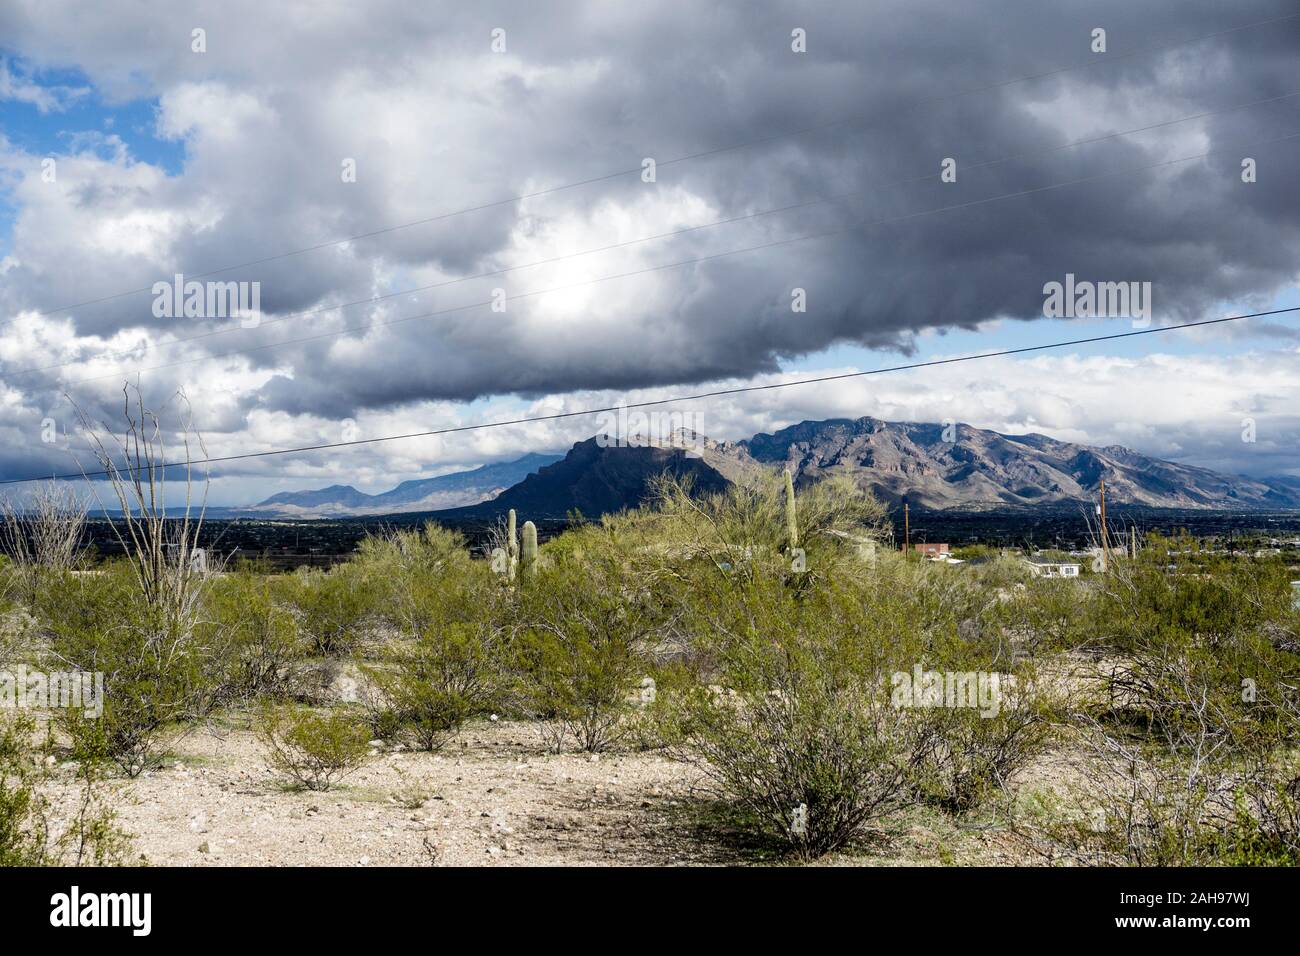 Herrlicher Ansichtsturm beschattete weit entfernte Santa Catalina Berge, während Wolken schnell in den Himmel kommen, von sonniger hoher Wüste am westlichen Stadtrand von Tucson gesehen Stockfoto